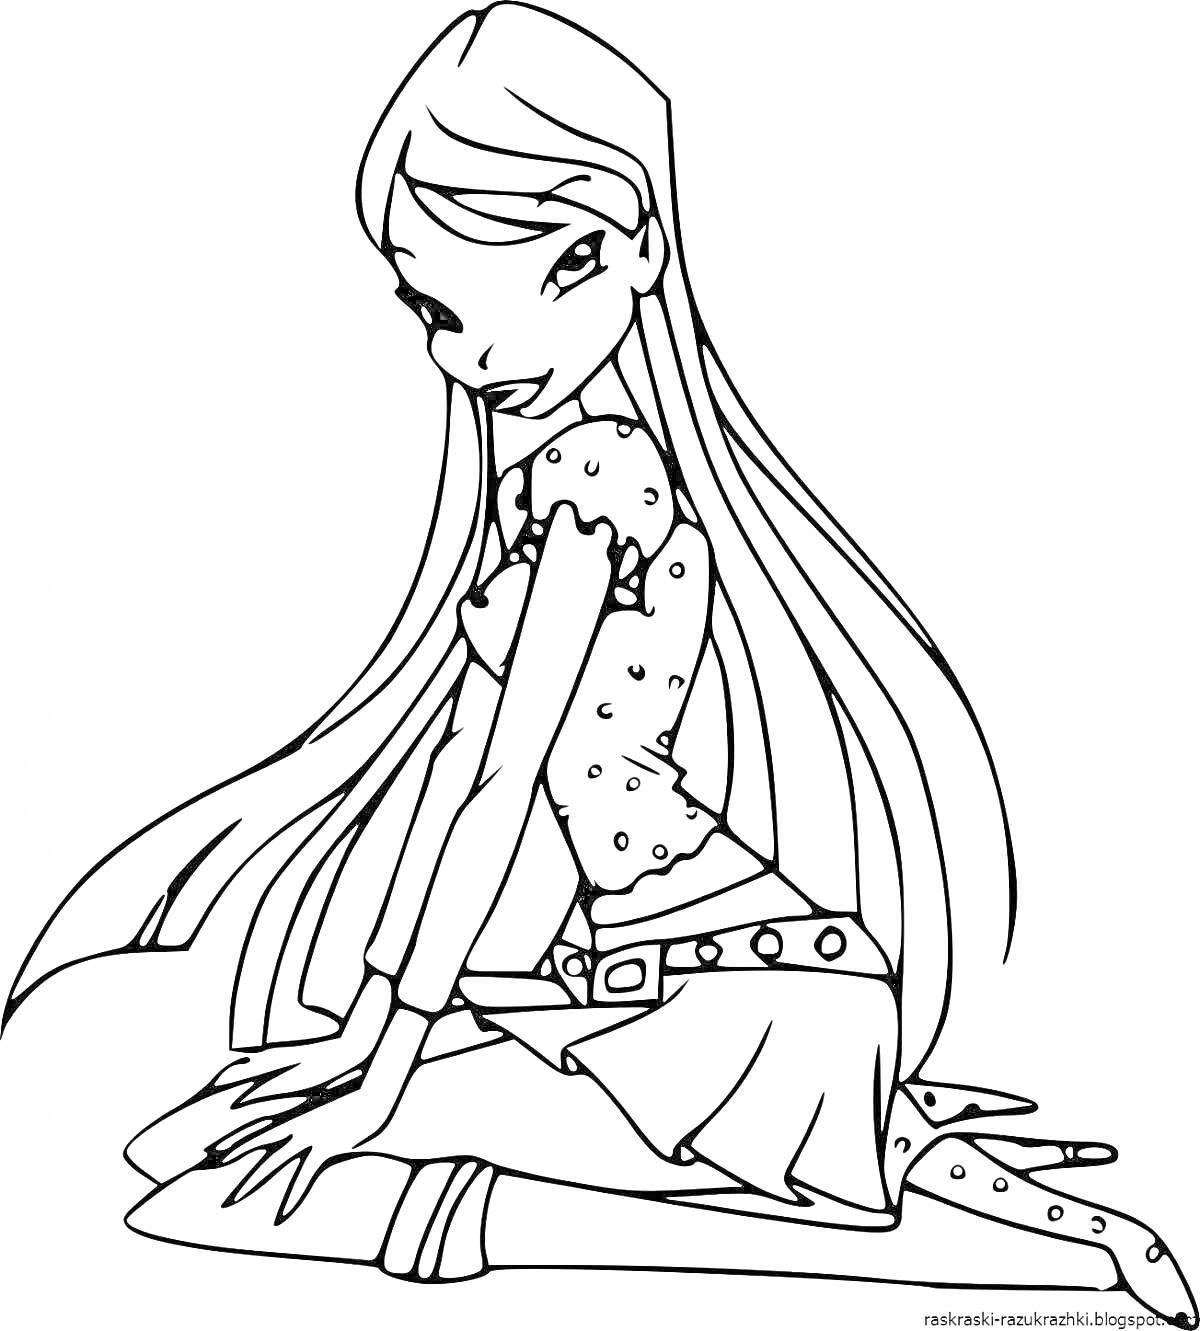 Девушка с длинными волосами, сидящая на коленях, в топе и юбке, держащая плюшевую игрушку